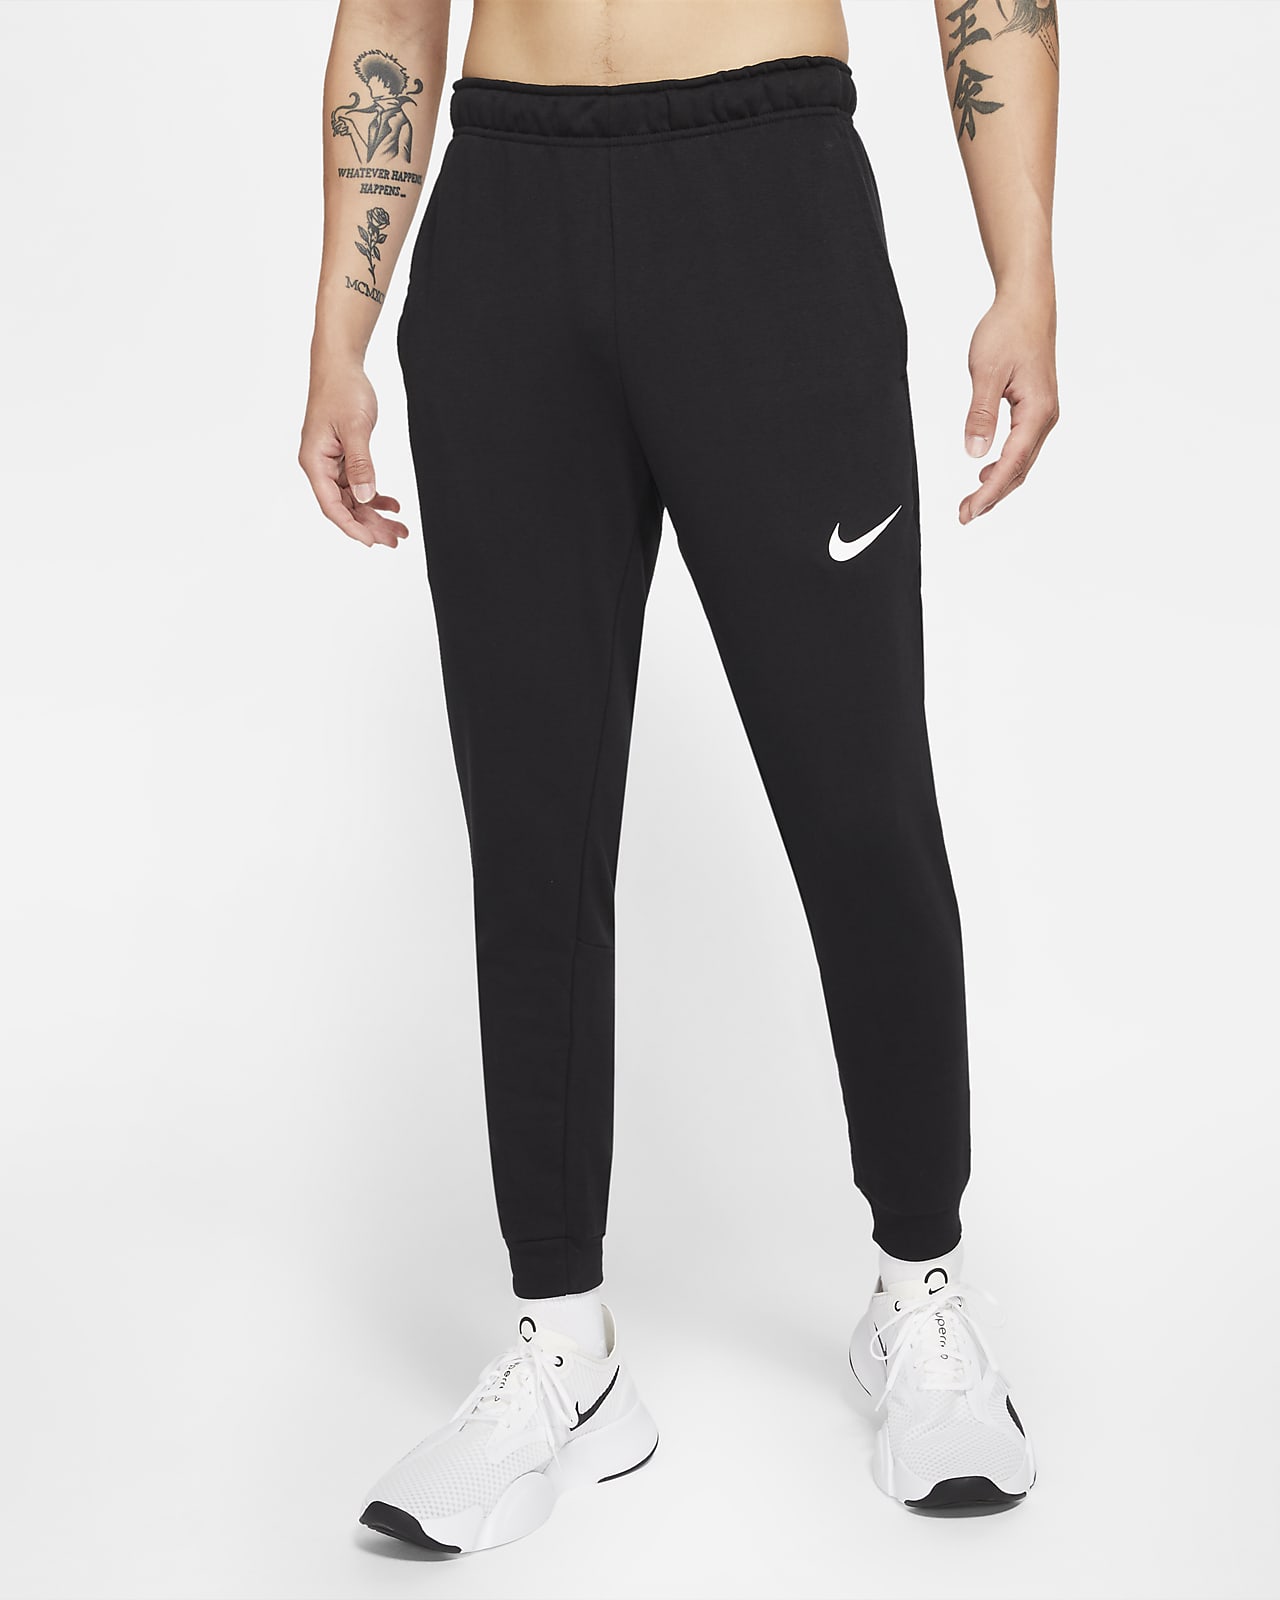 กางเกงเทรนนิ่งขายาวทรงขาเรียวผู้ชาย Nike Dri-FIT